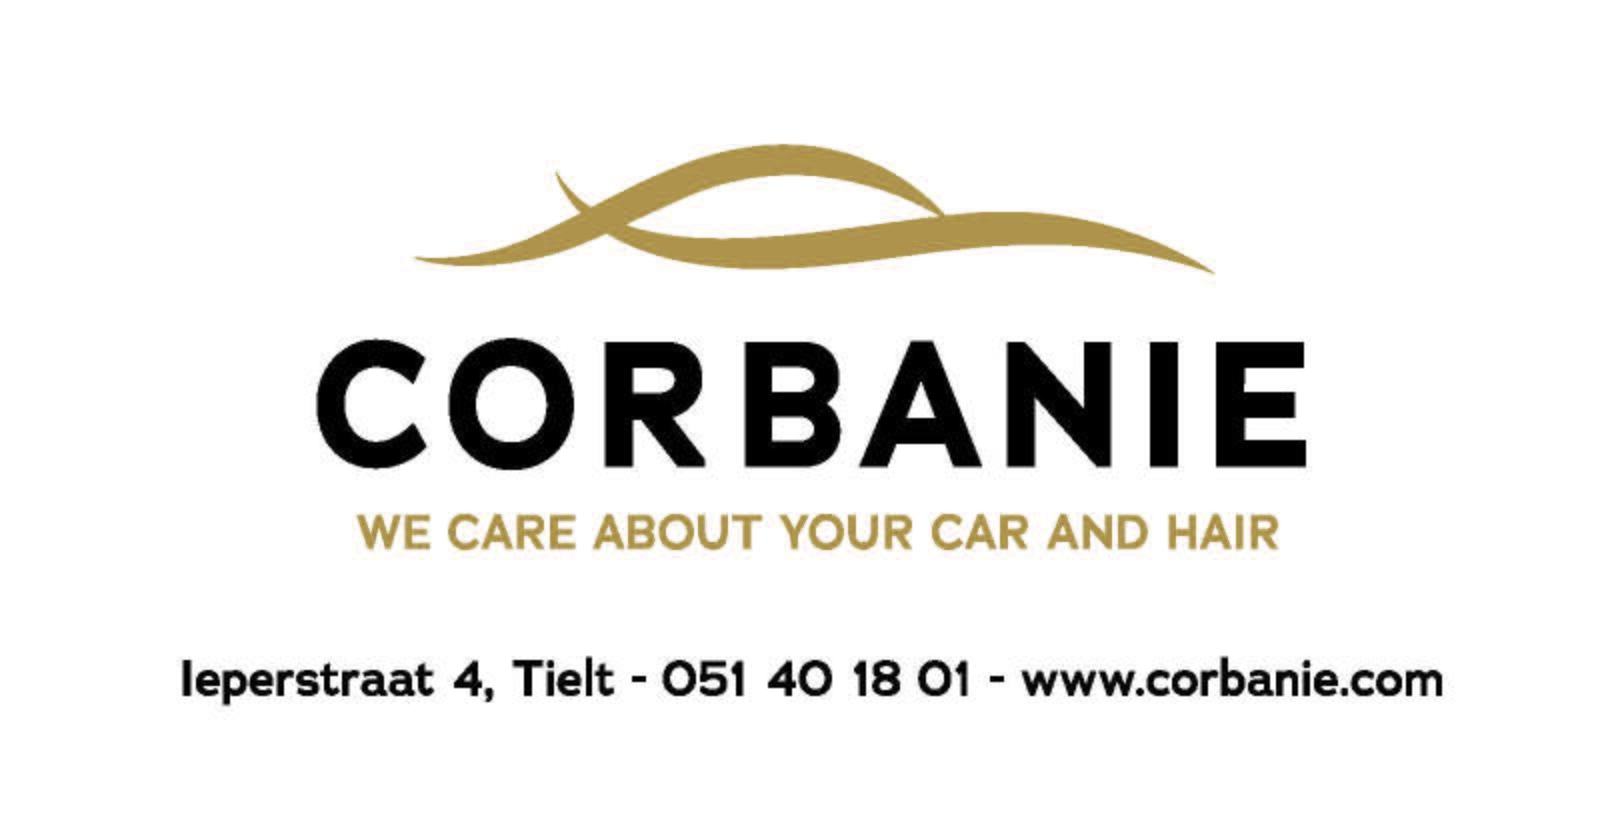 Corbanie